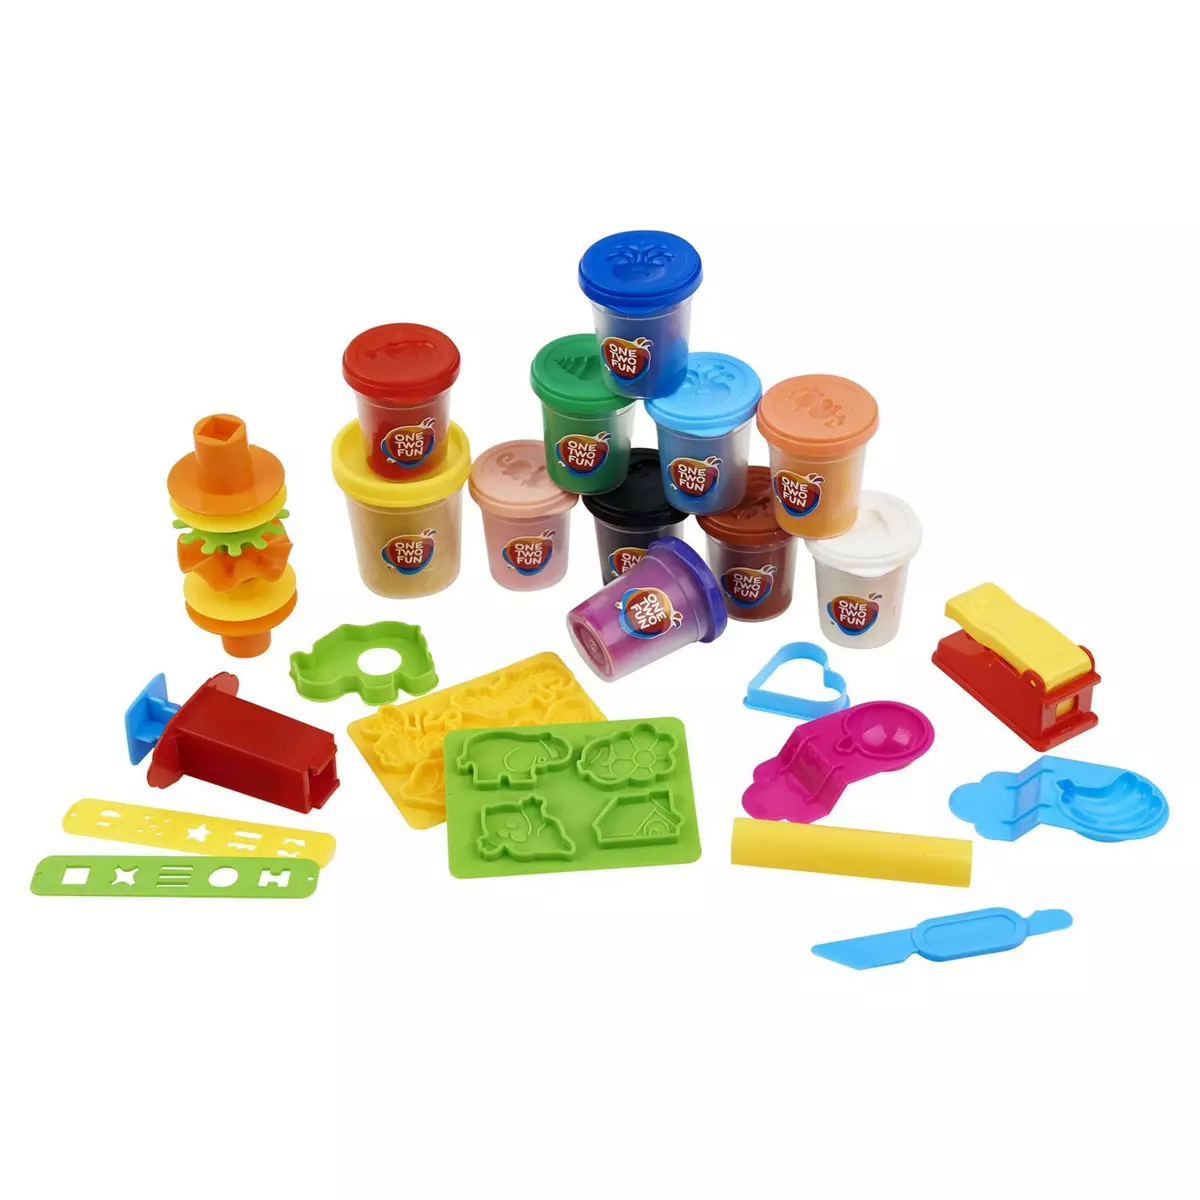 Pâte à modeler - Mon super café Play-Doh Kitchen Creations